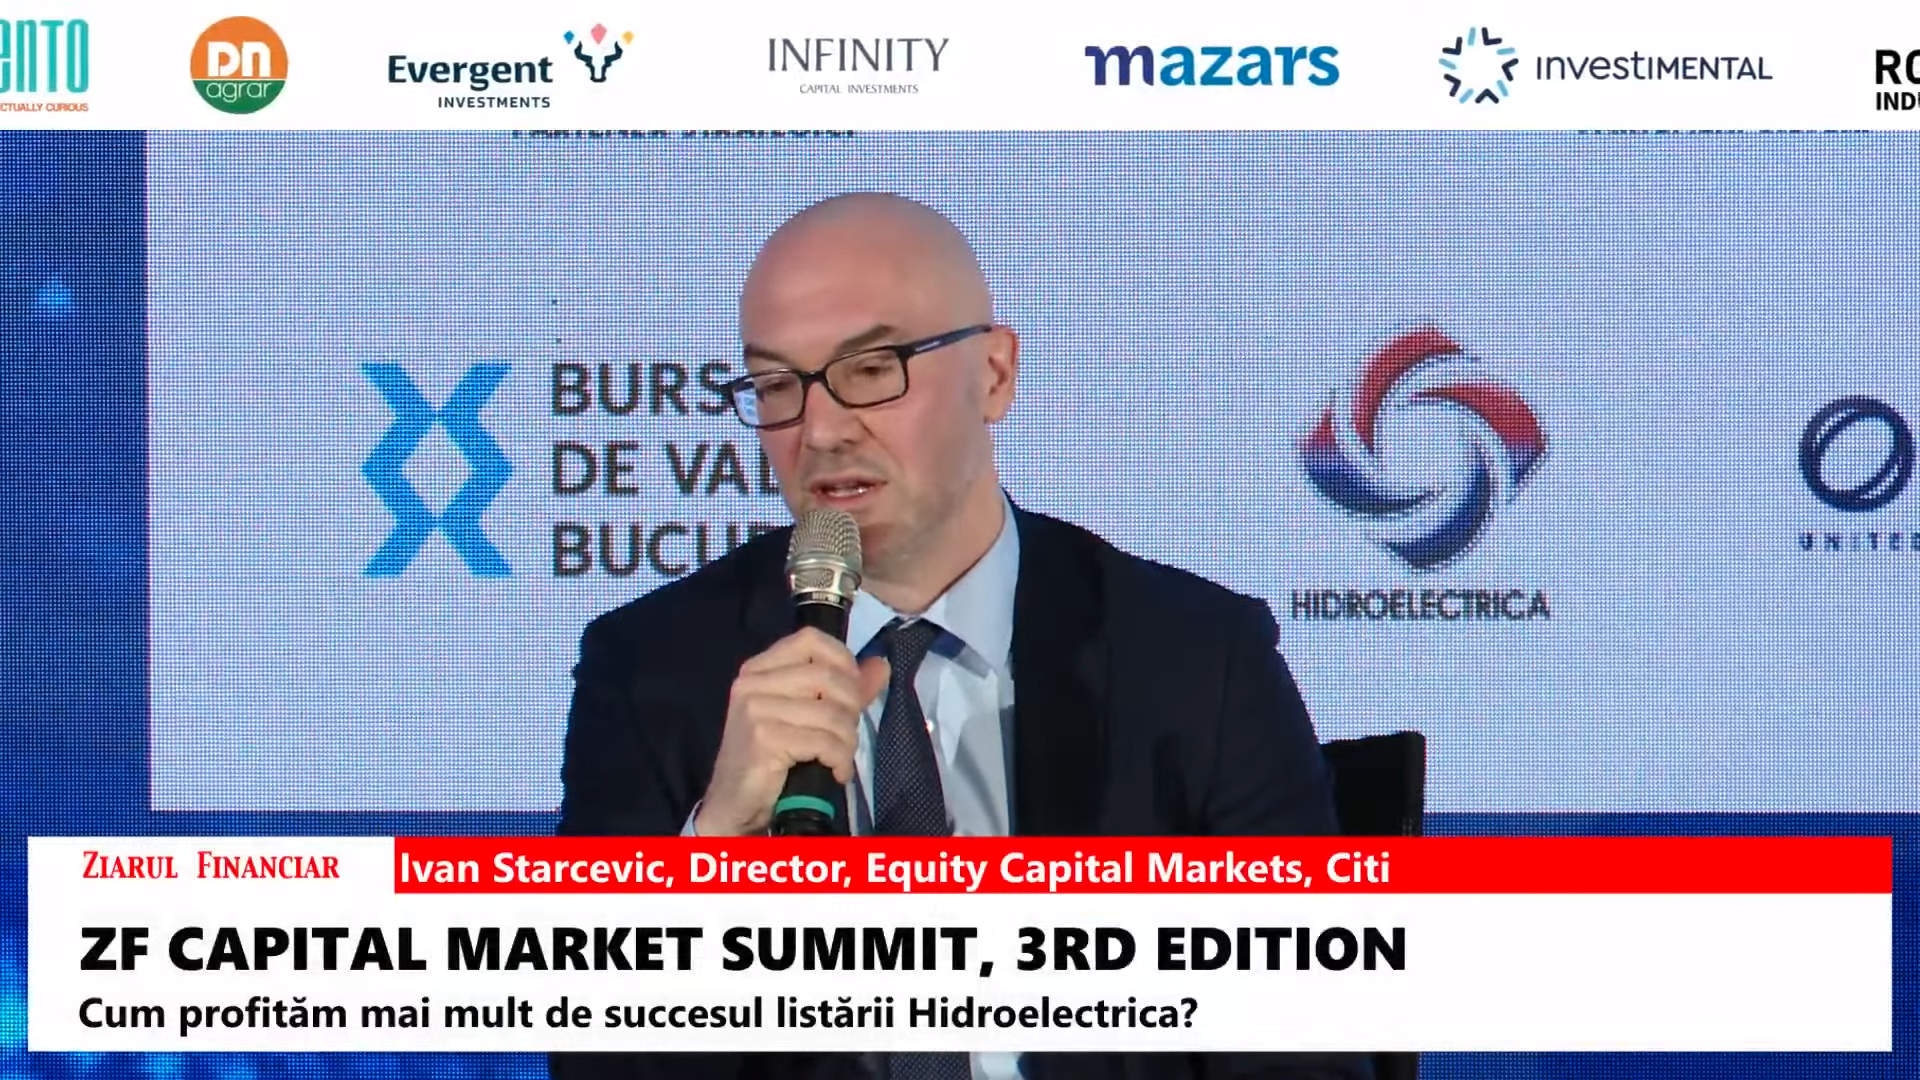 Ivan Starcevic, Director Equity Capital Markets, Citi: Hidroelectrica nu a fost doar o listare cu efect transformator pentru piaţa de capital din România, aceasta a revitalizat piaţa IPO-urilor pe întregul continent şi cu un efect mai mic, chiar cea globală